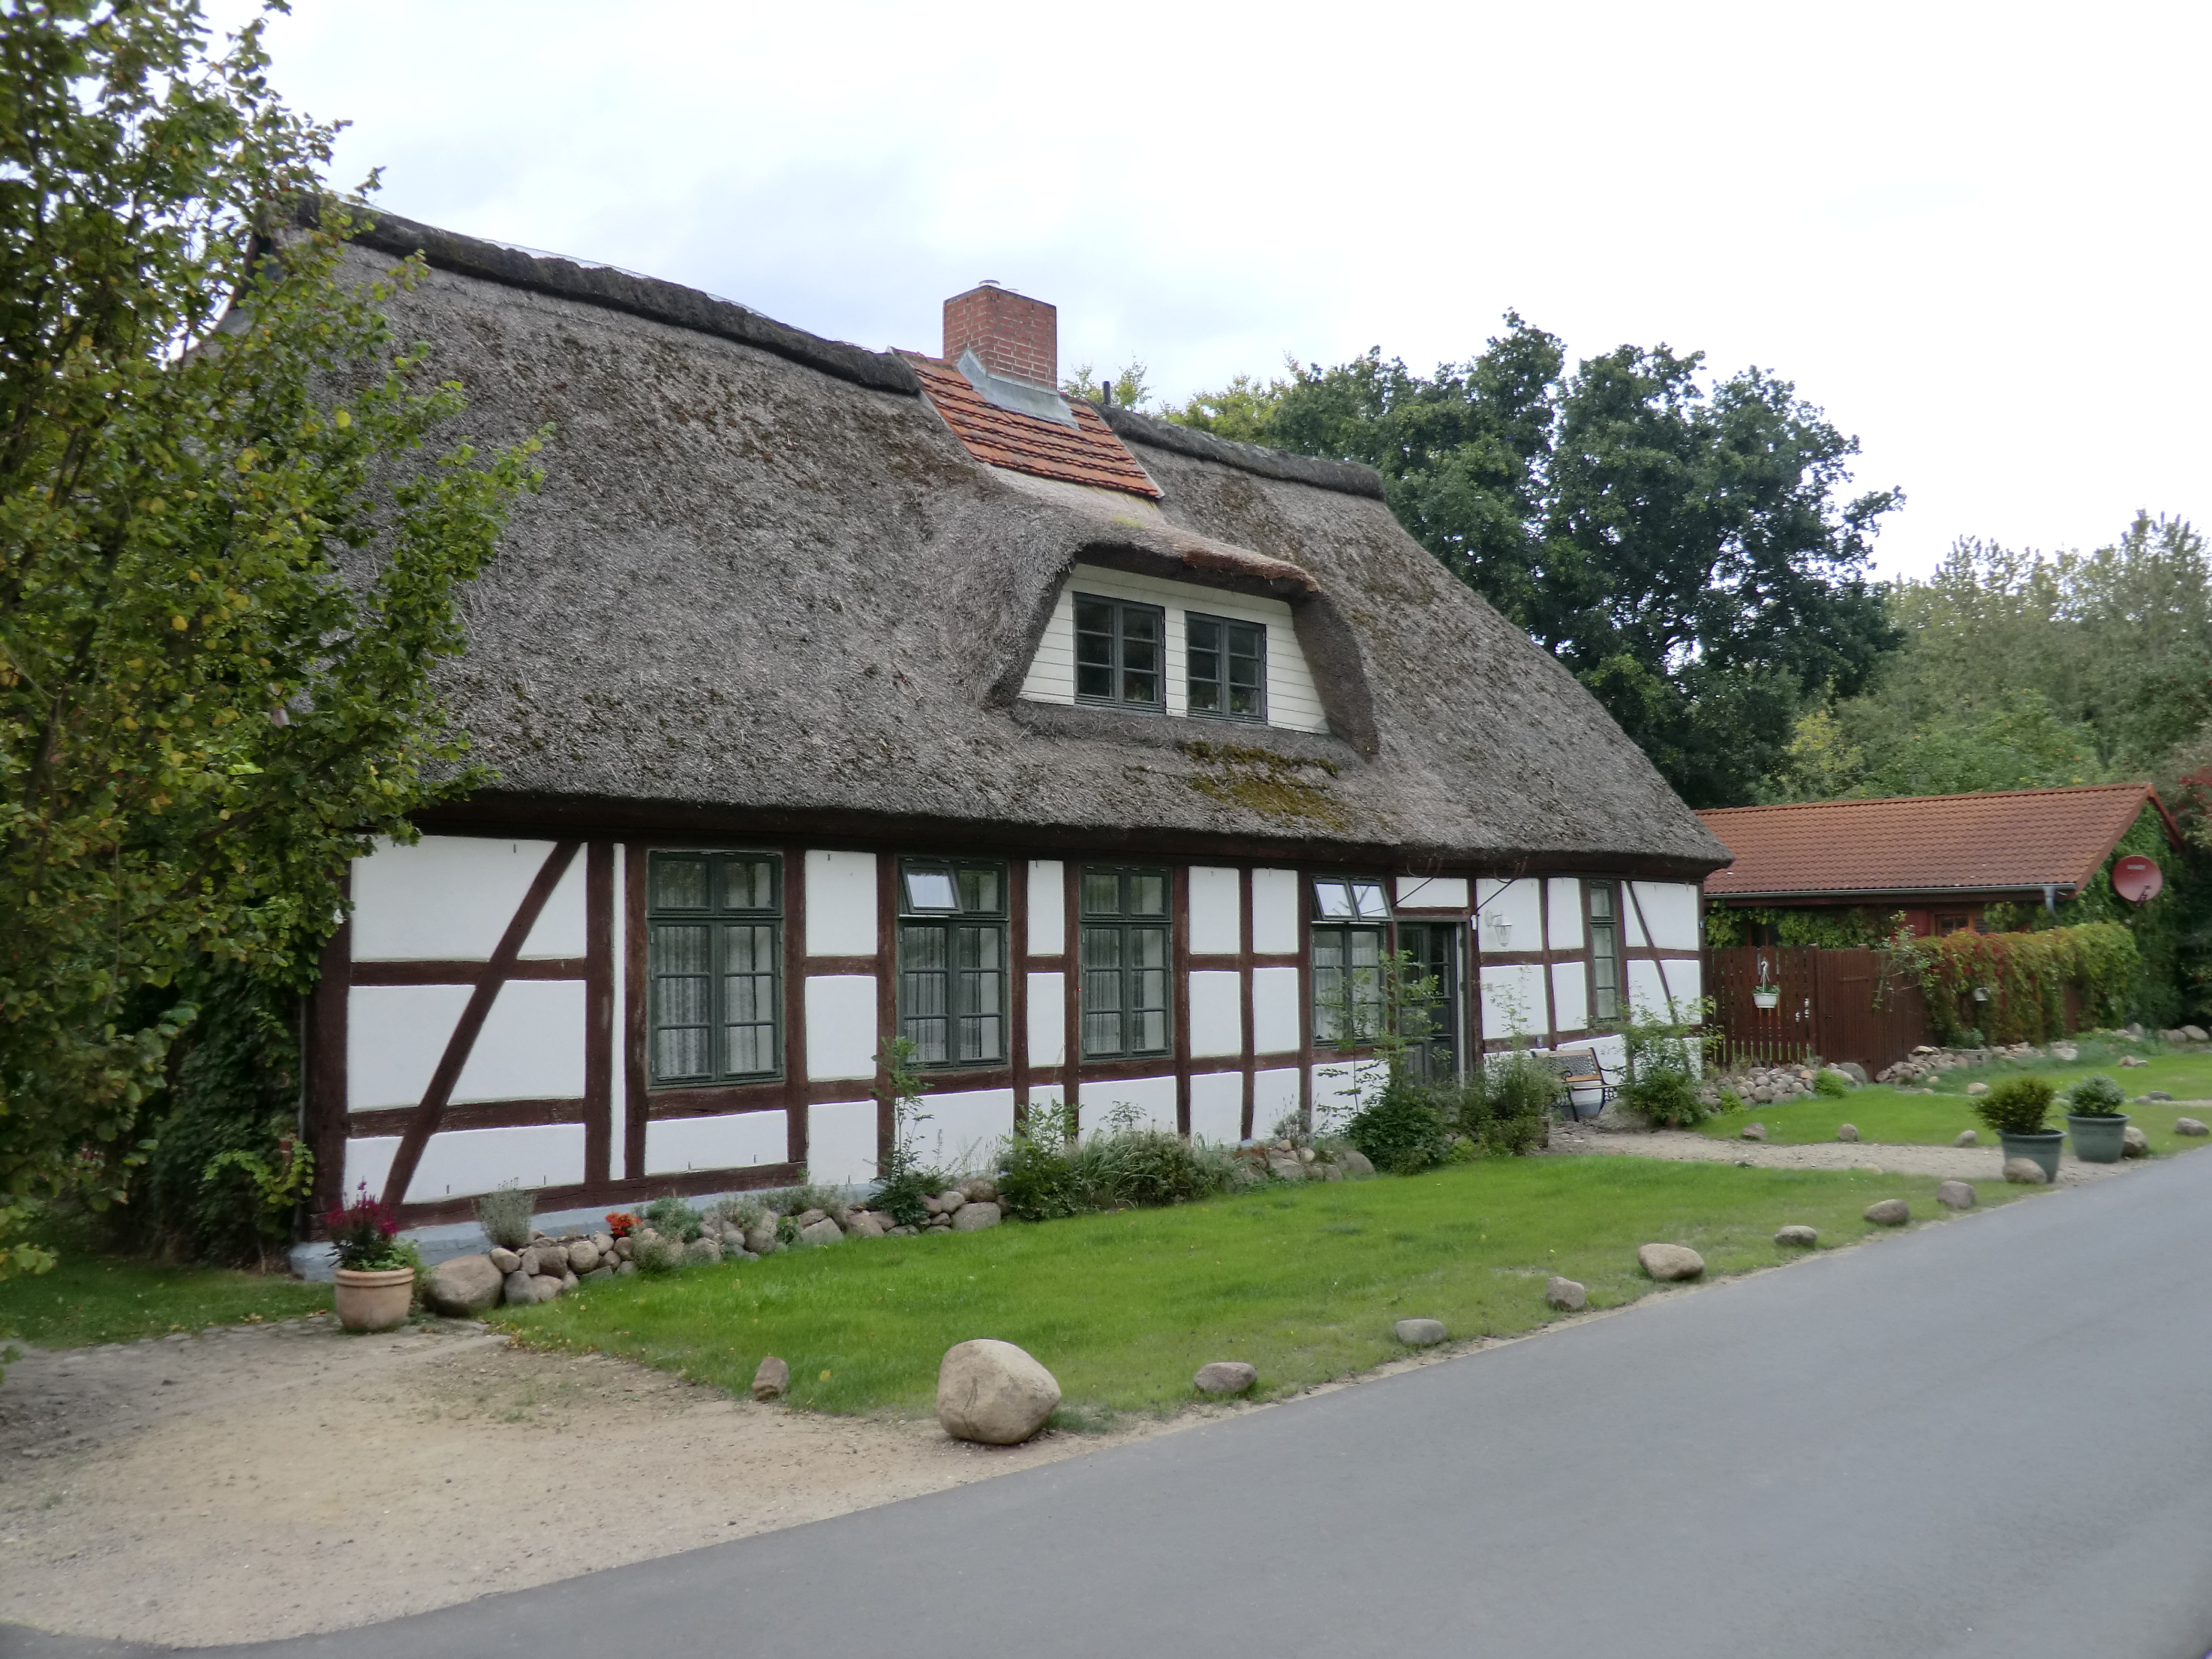 Fachwerkreetdachhaus (Altes Forsthaus) mit Ferienwohnungen unterschiedlicher Grösse und Ausstattung